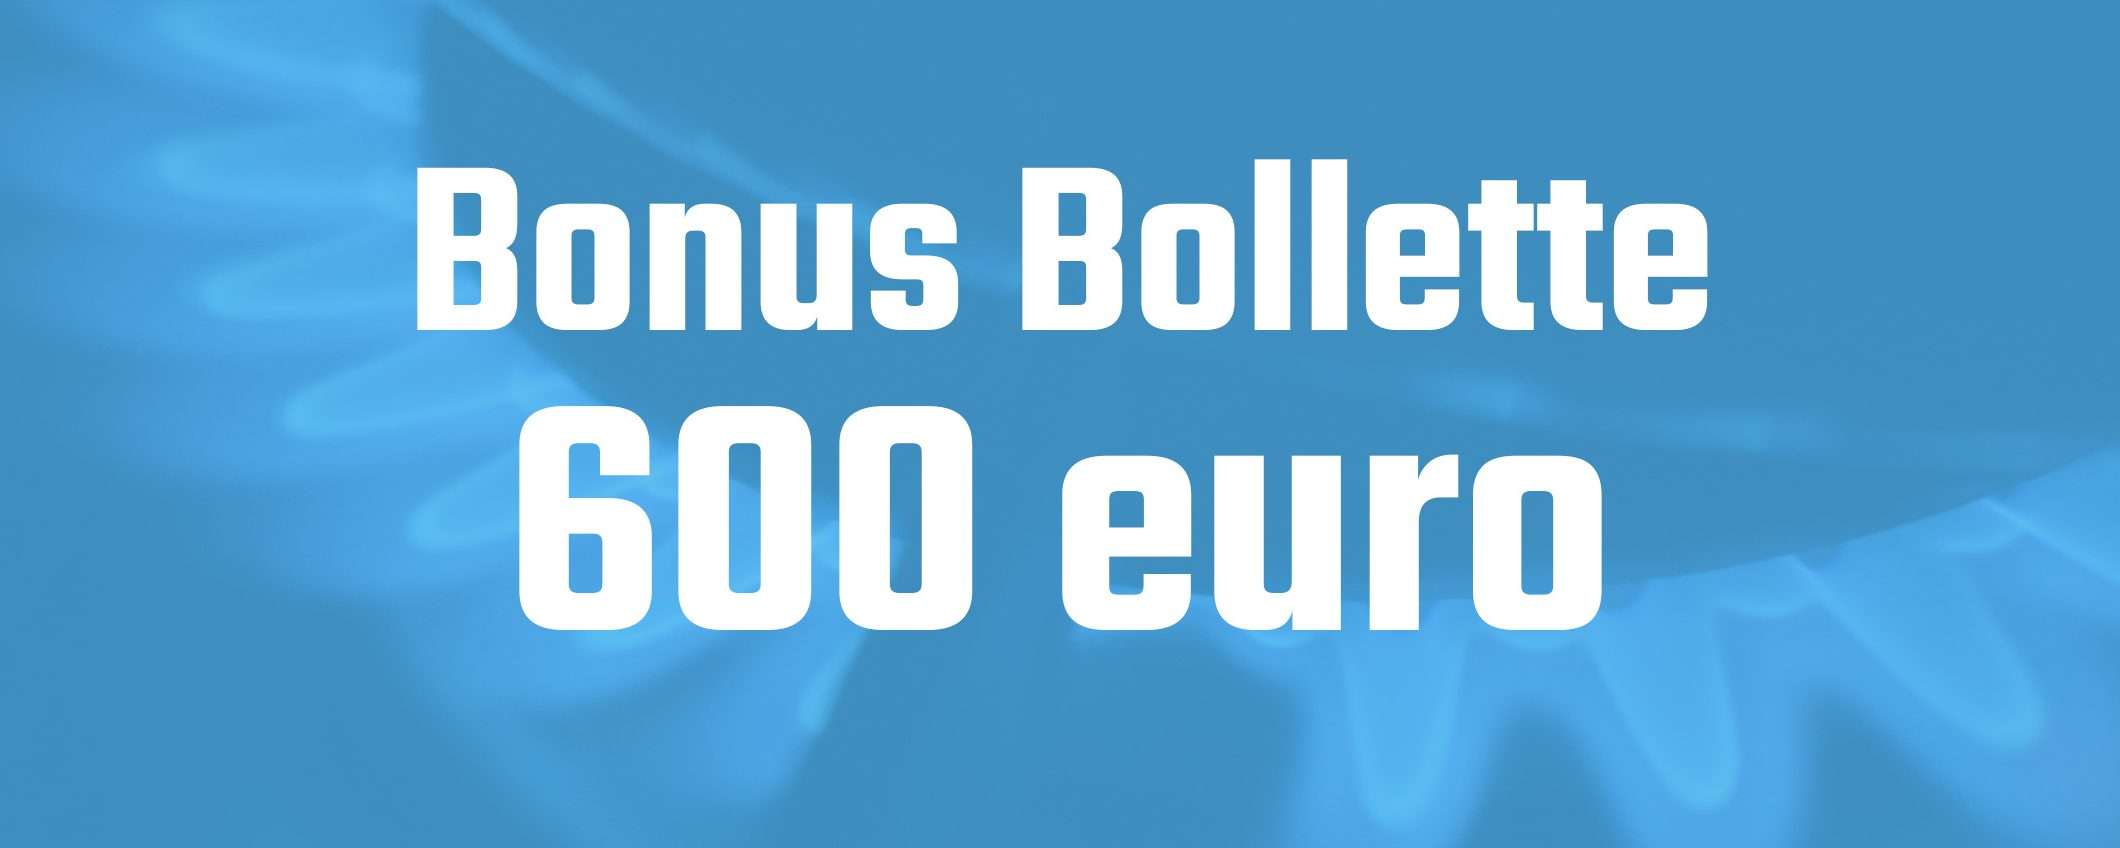 Bonus Bollette 600 euro: cos'è e come funziona